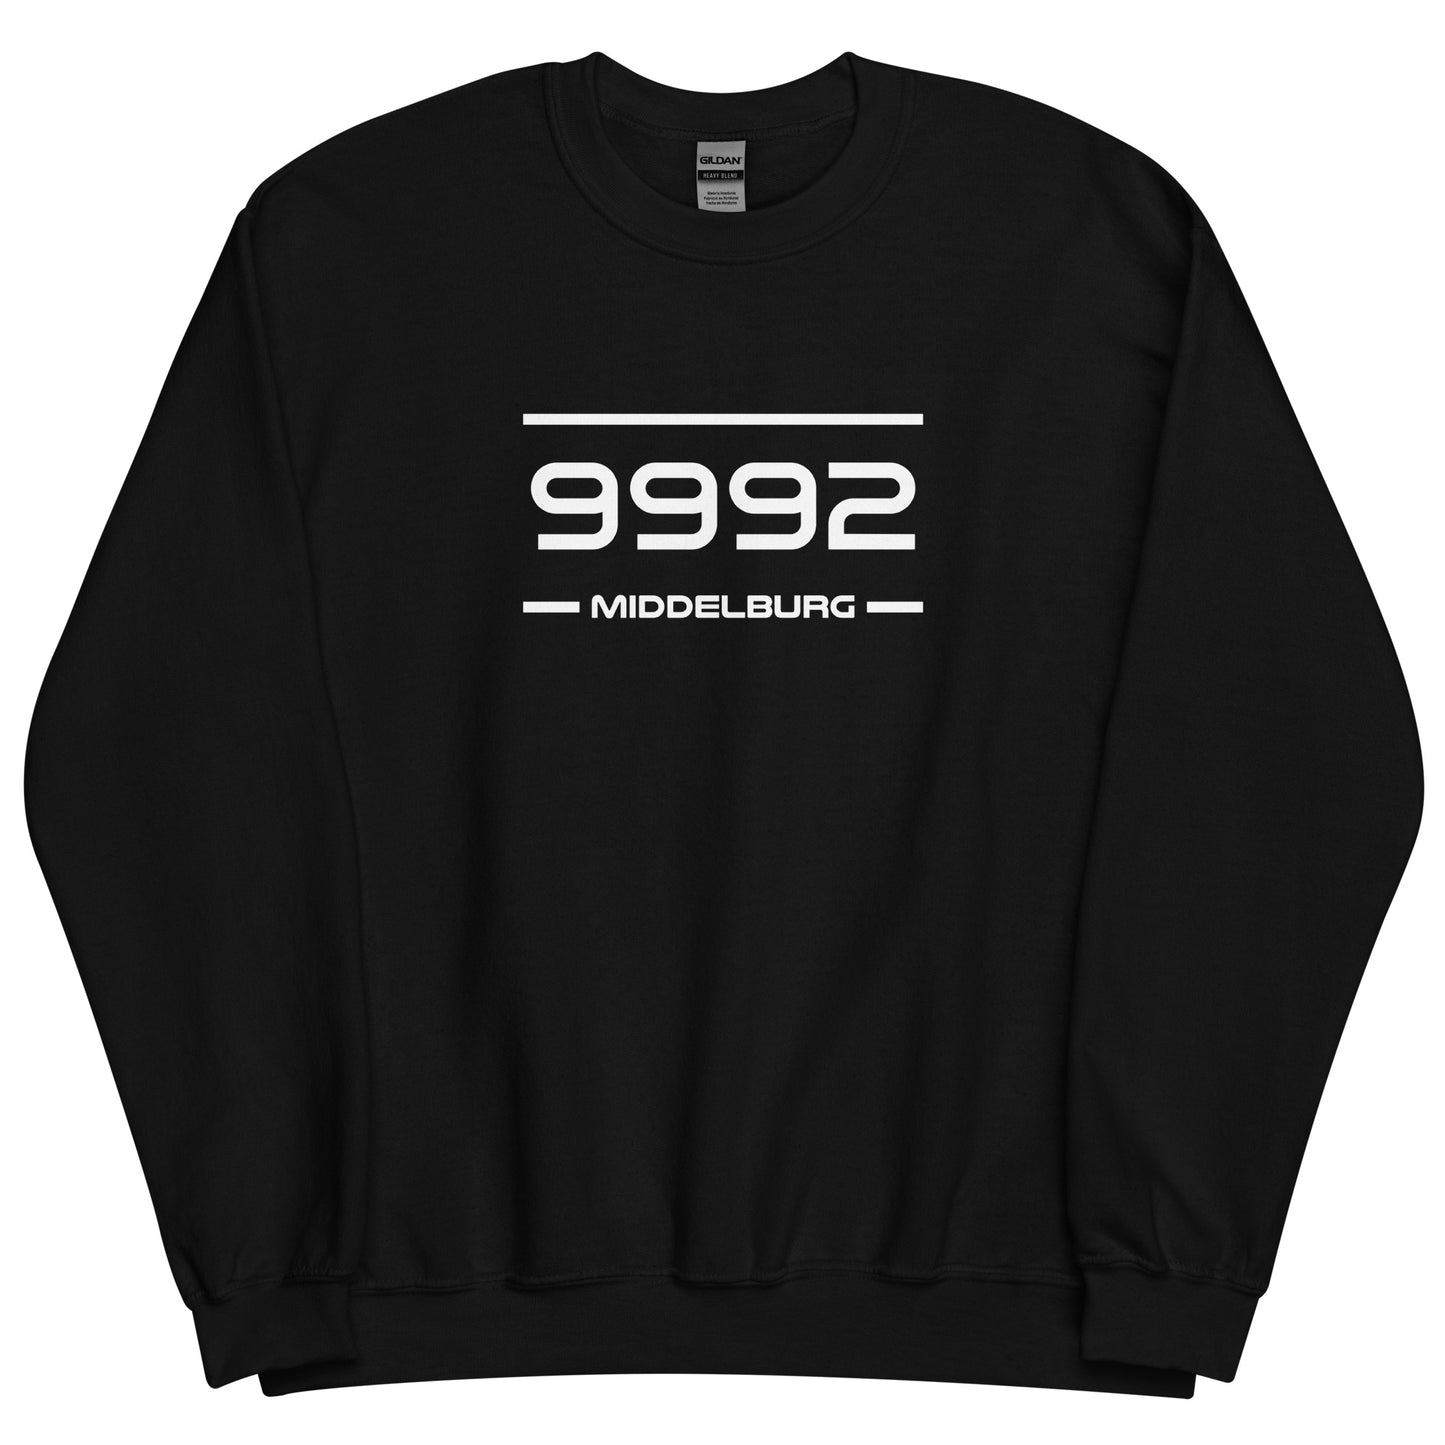 Sweater - 9992 - Middelburg (M/V)